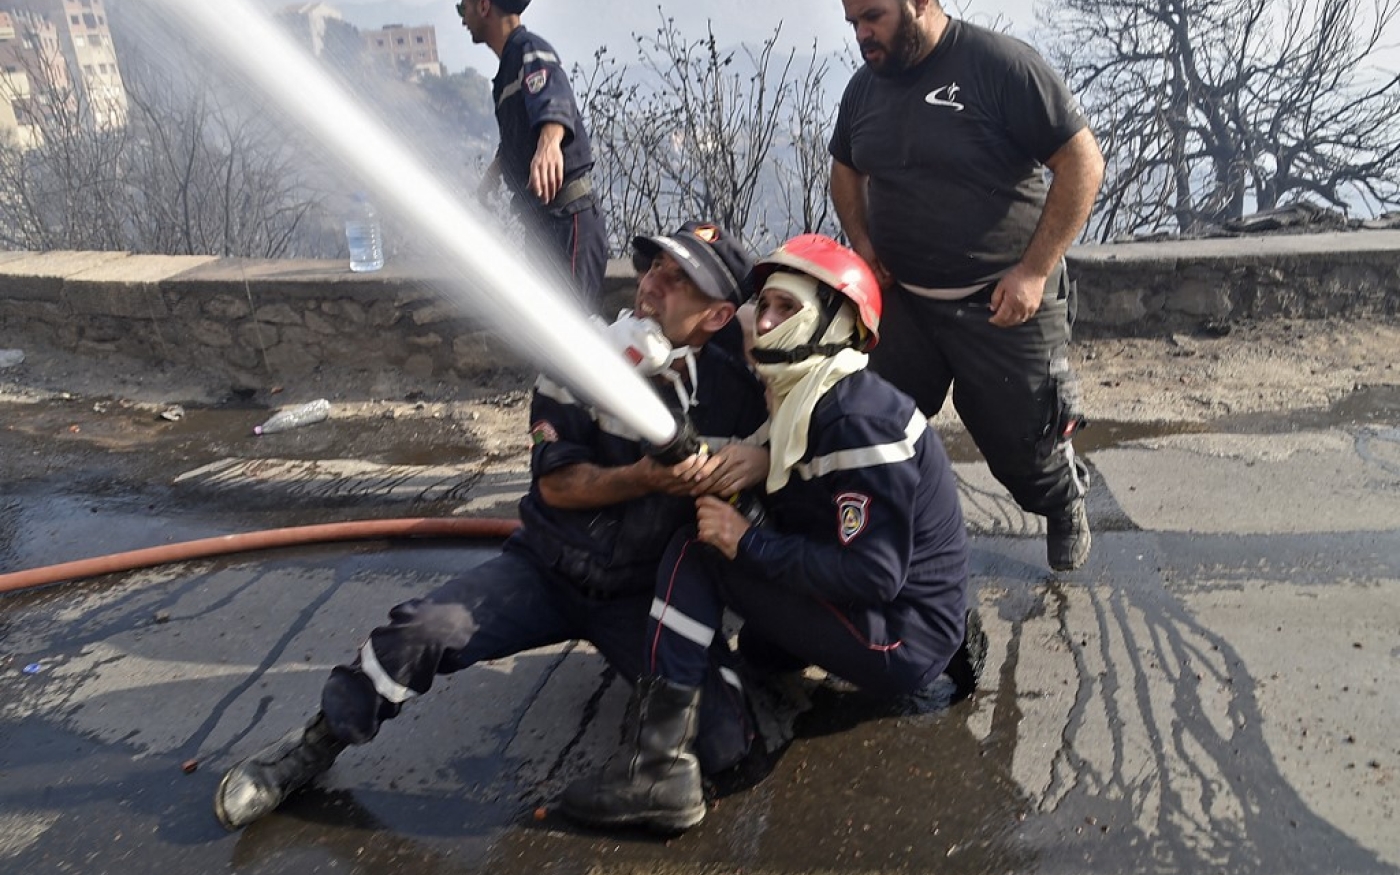 Des pompiers combattent le feu à coups de lance à eau, près de Tizi Ouzou, le 11 août 2021 (AFP/Ryad Kramdi)